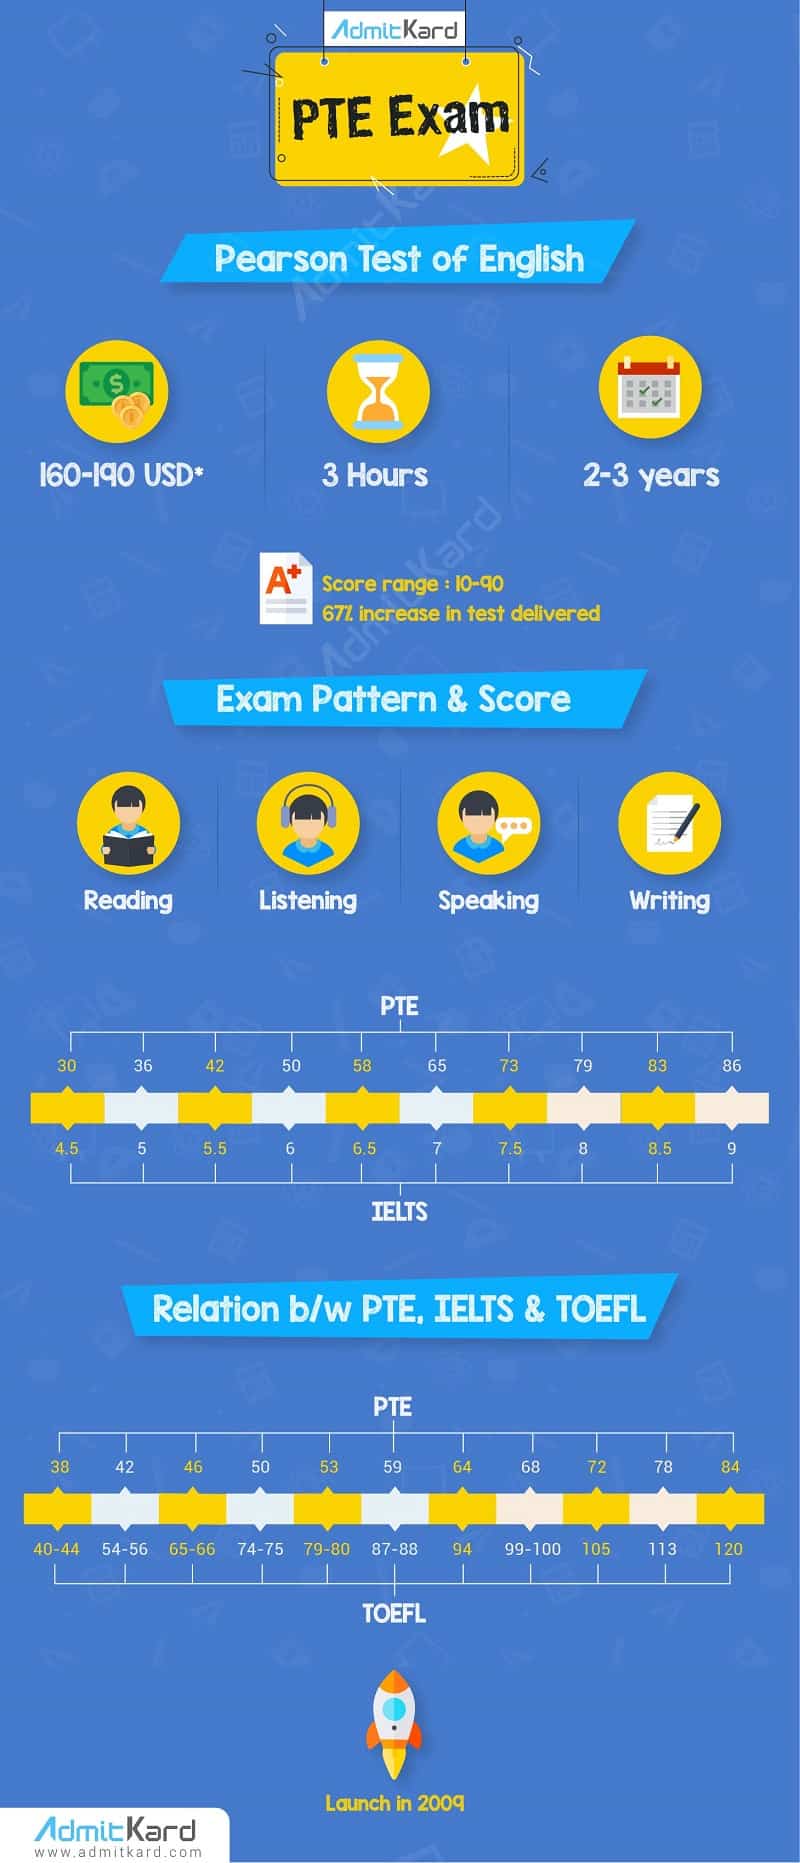 PTE Exam Infographic